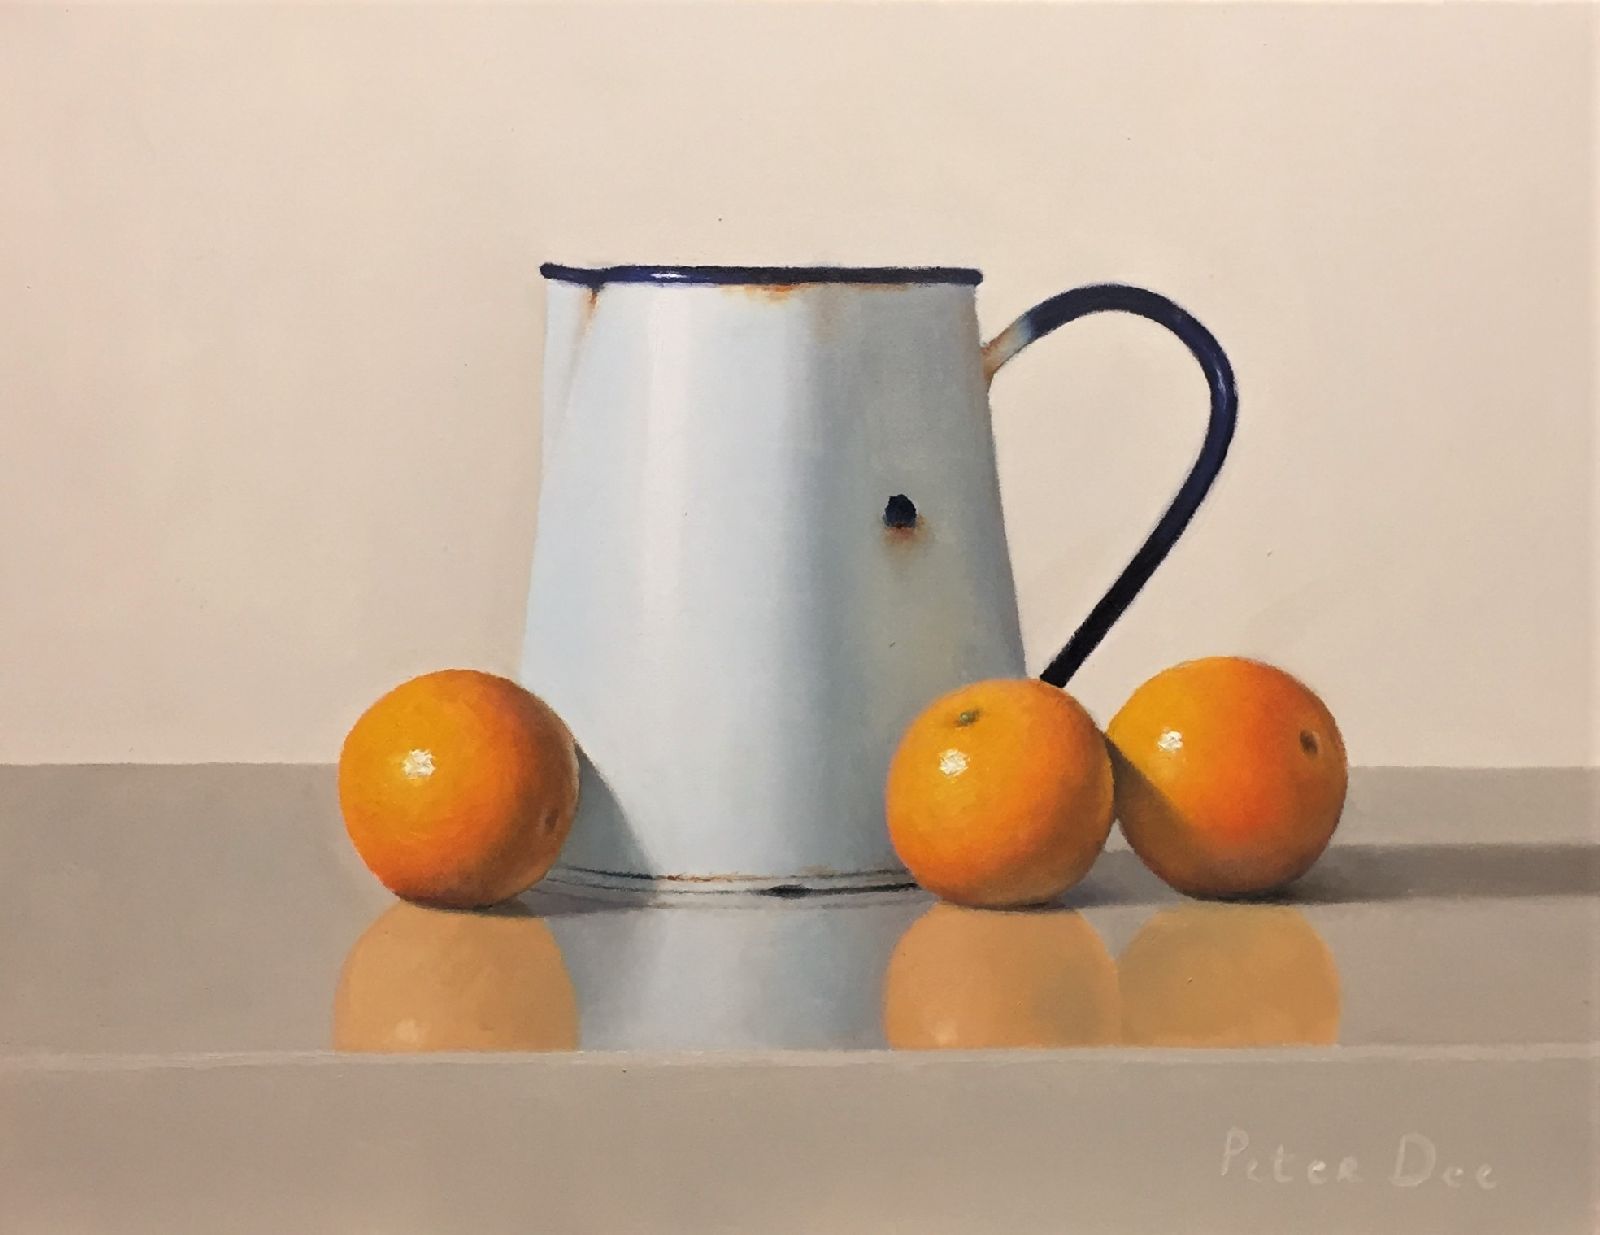 Peter Dee - Blue Enamelware with Oranges